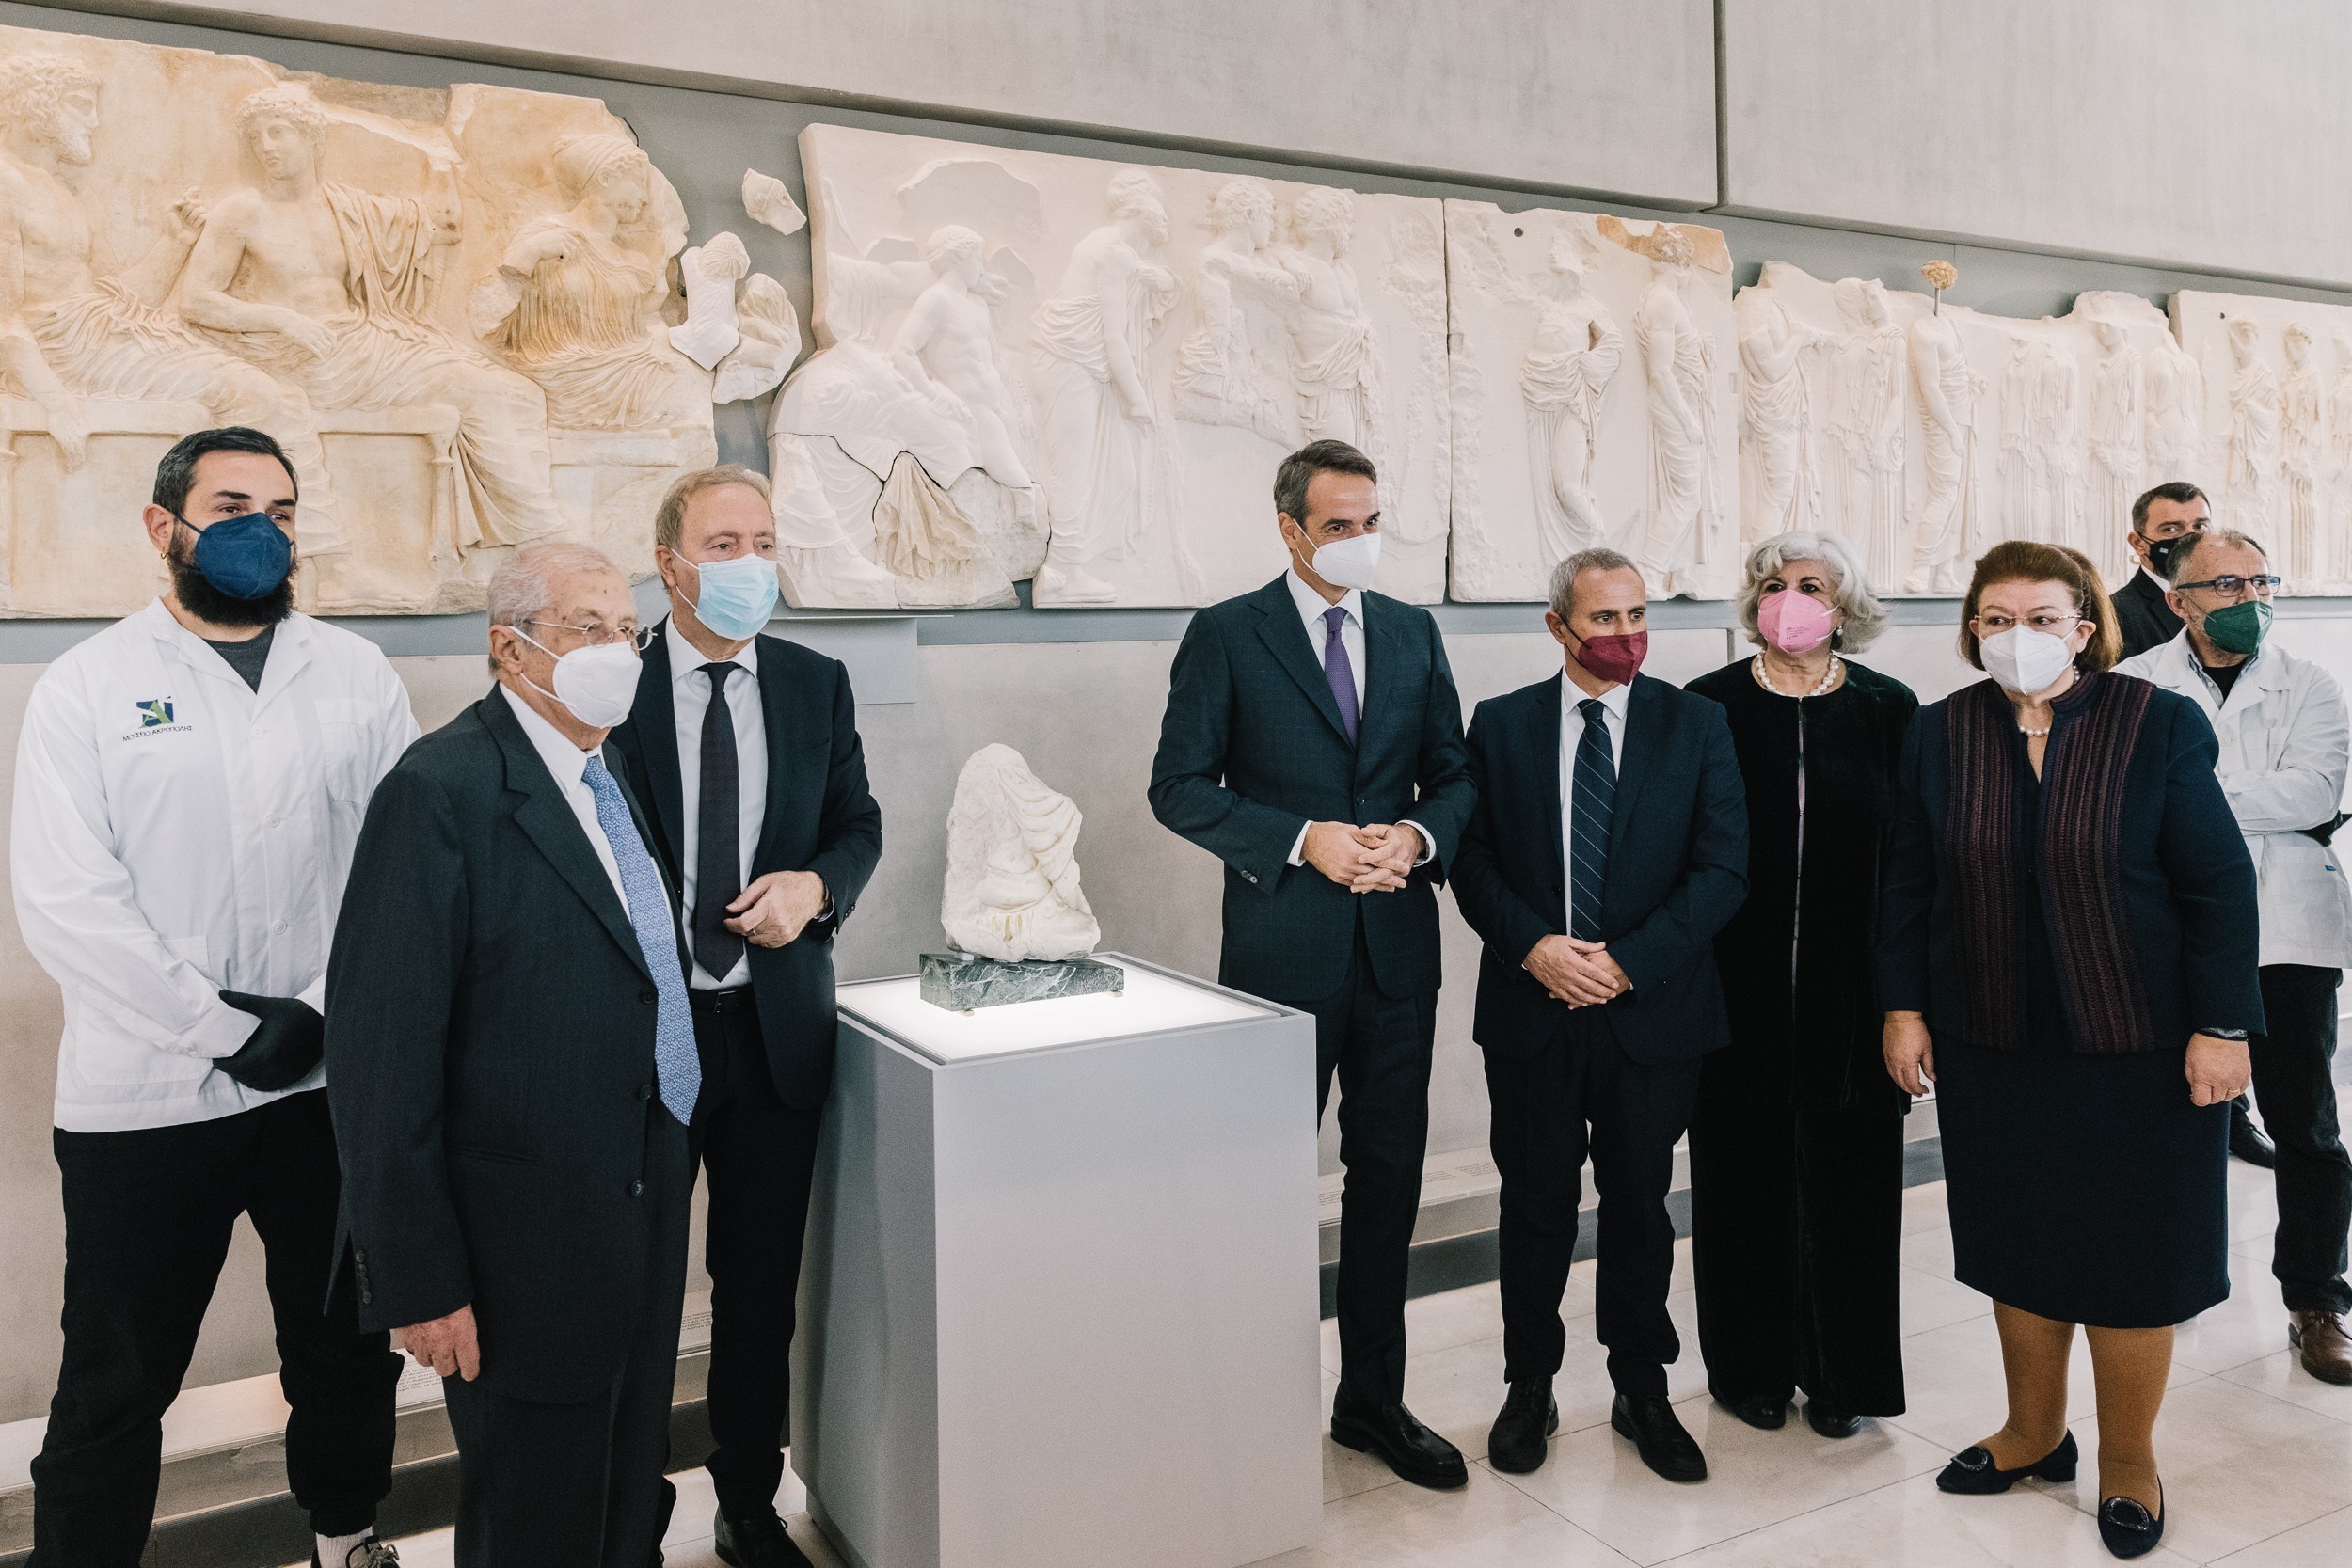 Στο Μουσείο Ακρόπολης στην εκδήλωση για το «θραύσμα Fagan» με τον πρωθυπουργό Κυριάκο Μητσοτάκη, την υπουργό Πολιτισμού Λίνα Μενδώνη, τον γενικό διευθυντή του Μουσείου Ακρόπολης Νίκο Σταμπολίδη και ιταλούς επισήμους